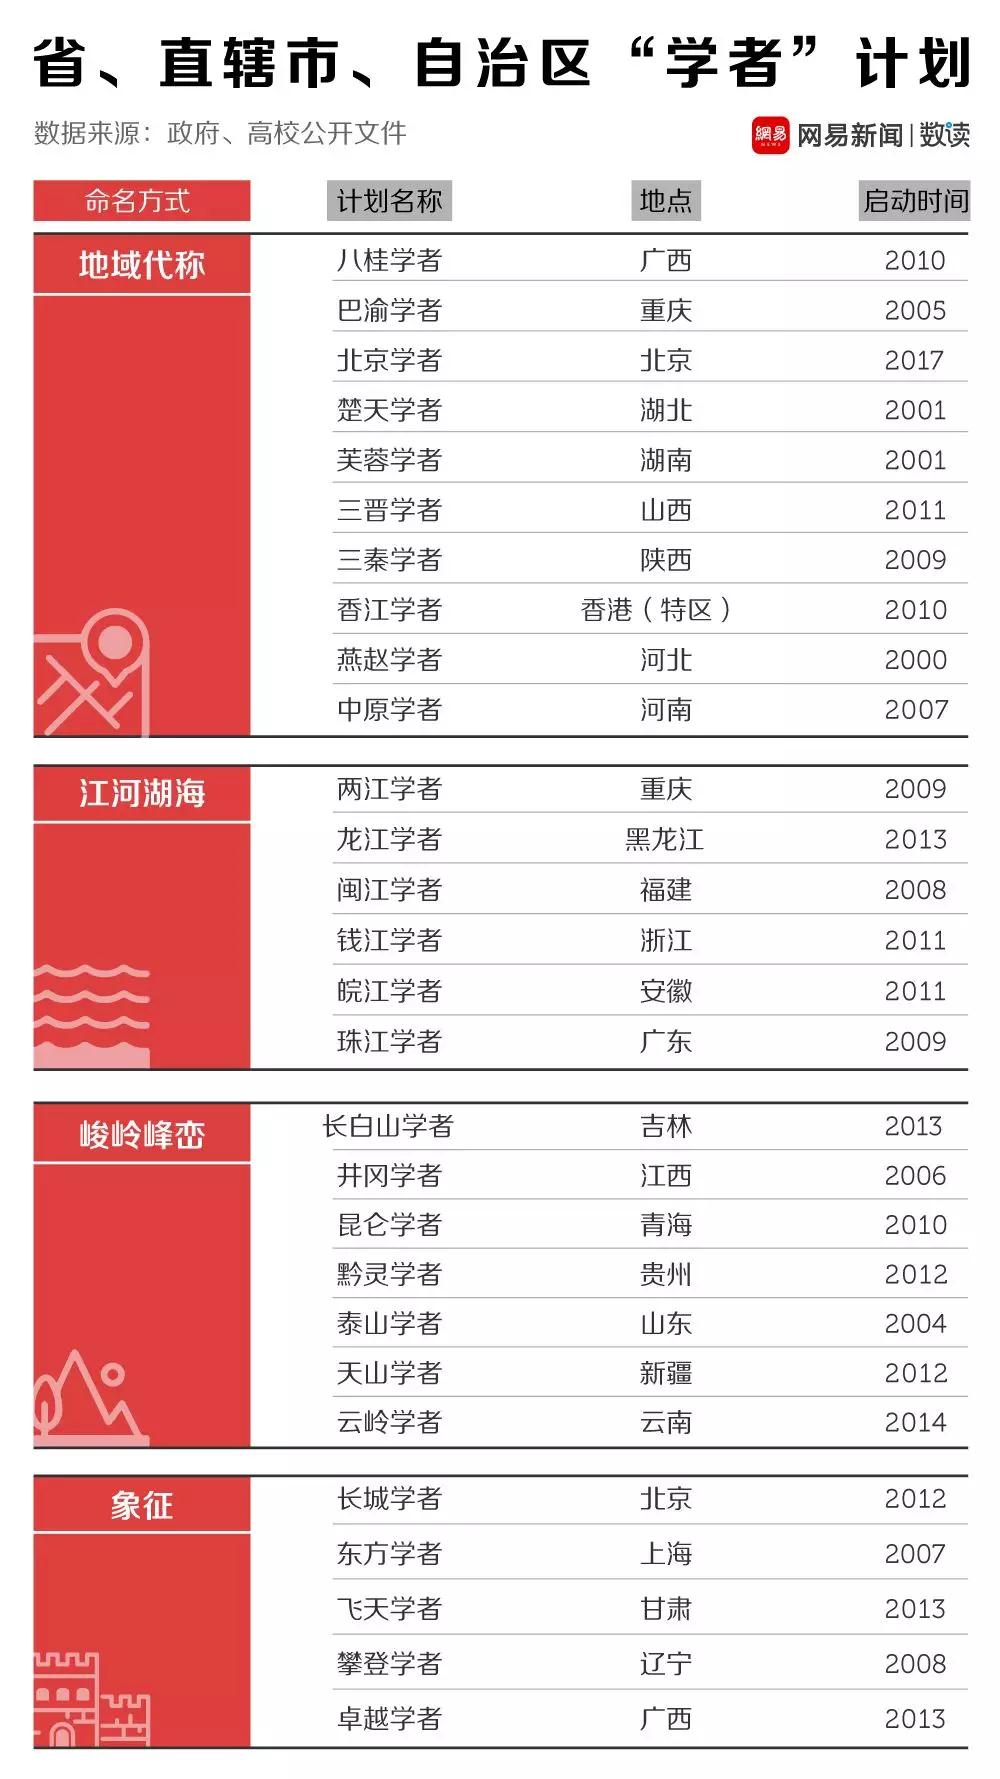 详数中国学者的头衔，另类的武林大会